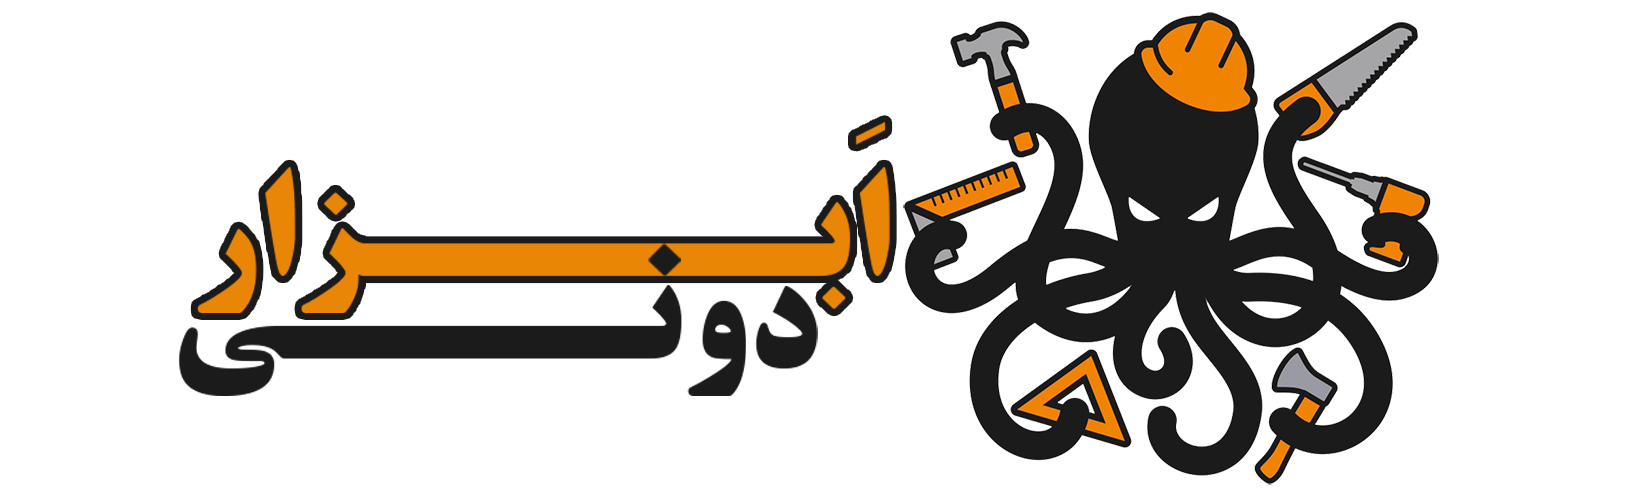 ابزاردونی - فروشگاه بزرگ ابزار ایران